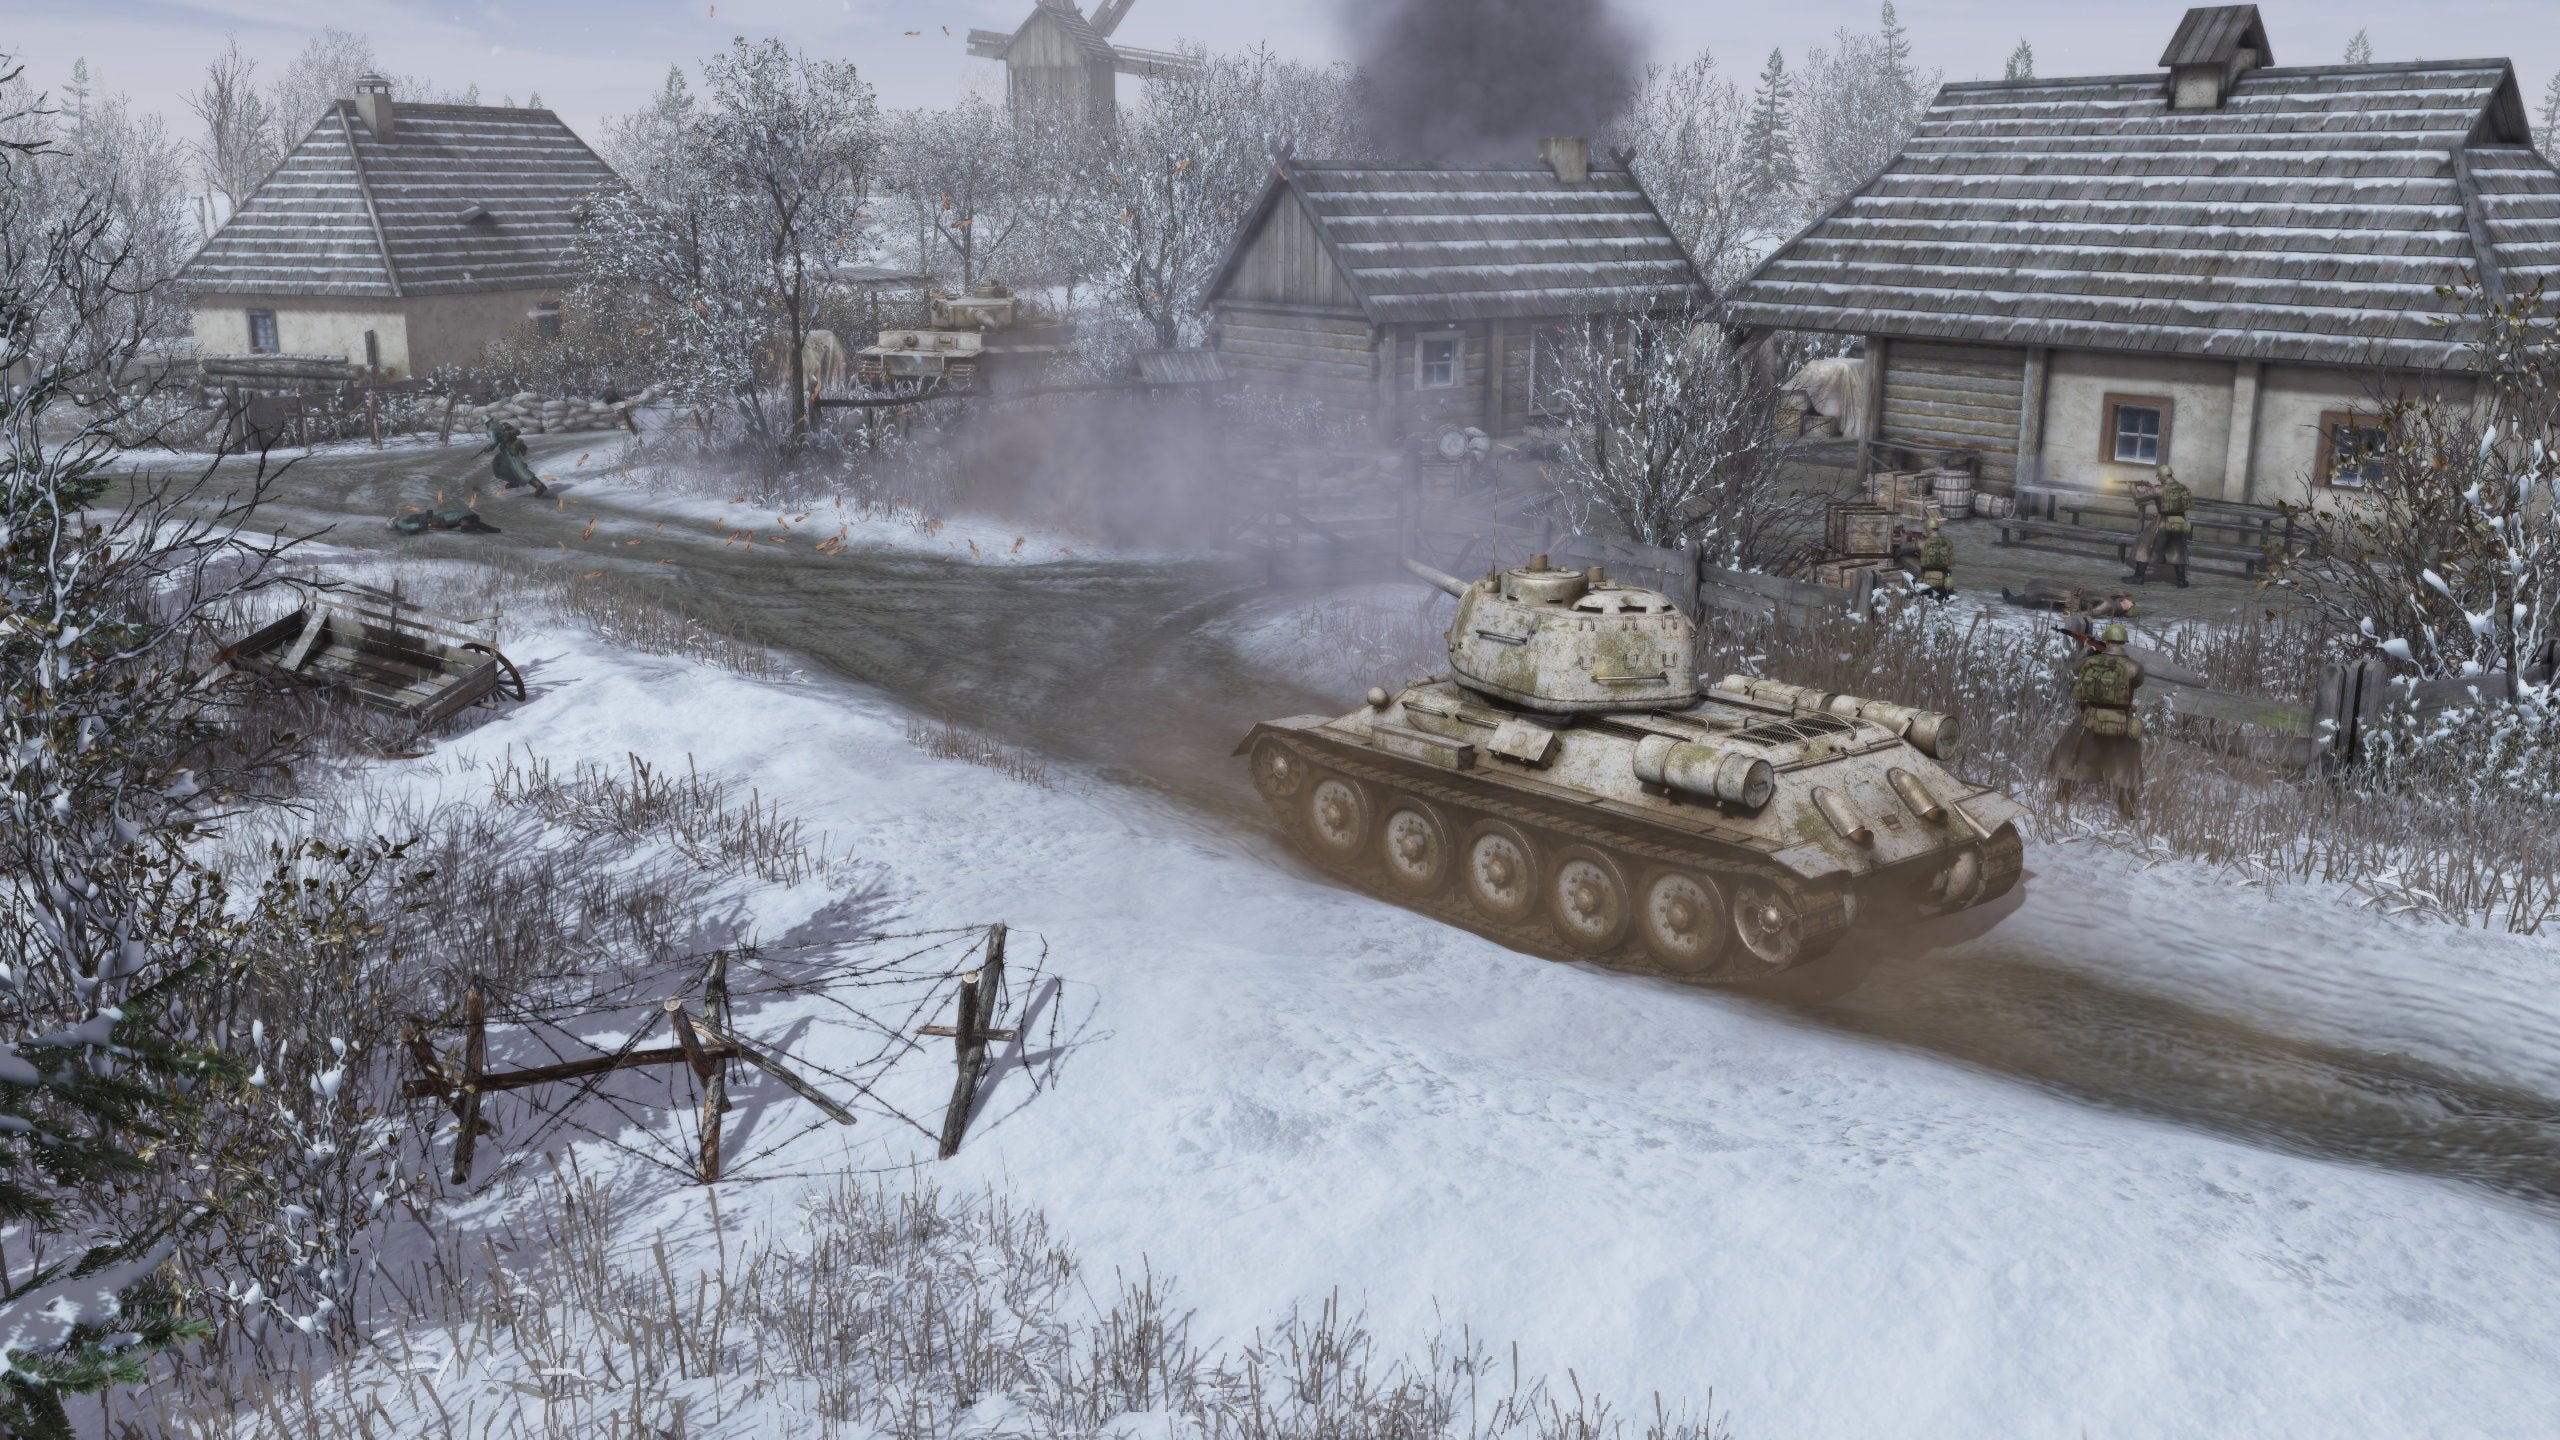 Tanks roll through a snowy village in Men Of War 2